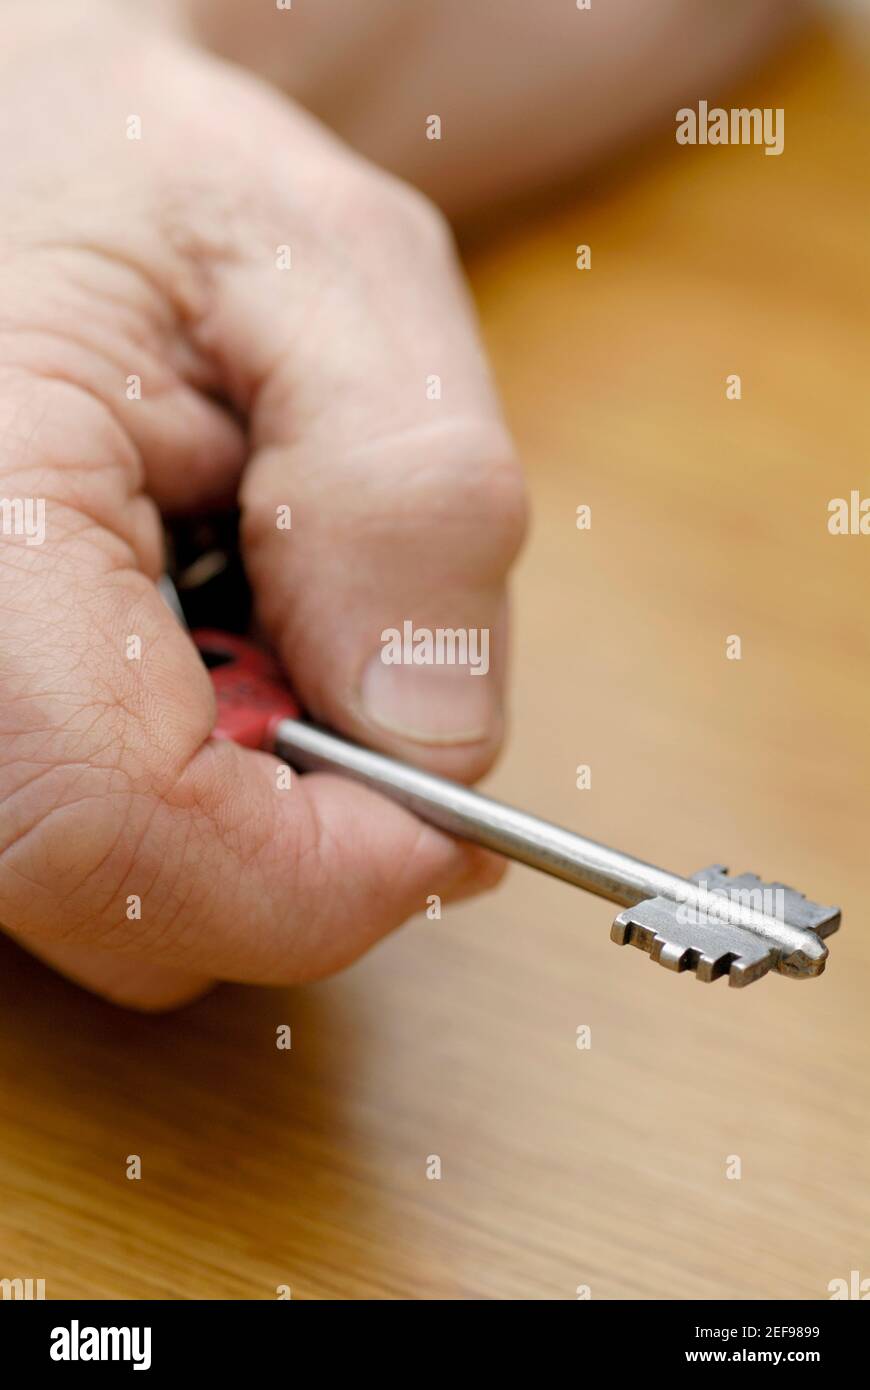 Nahaufnahme einer personÅ½s Hand, die einen Schlüssel hält Stockfoto